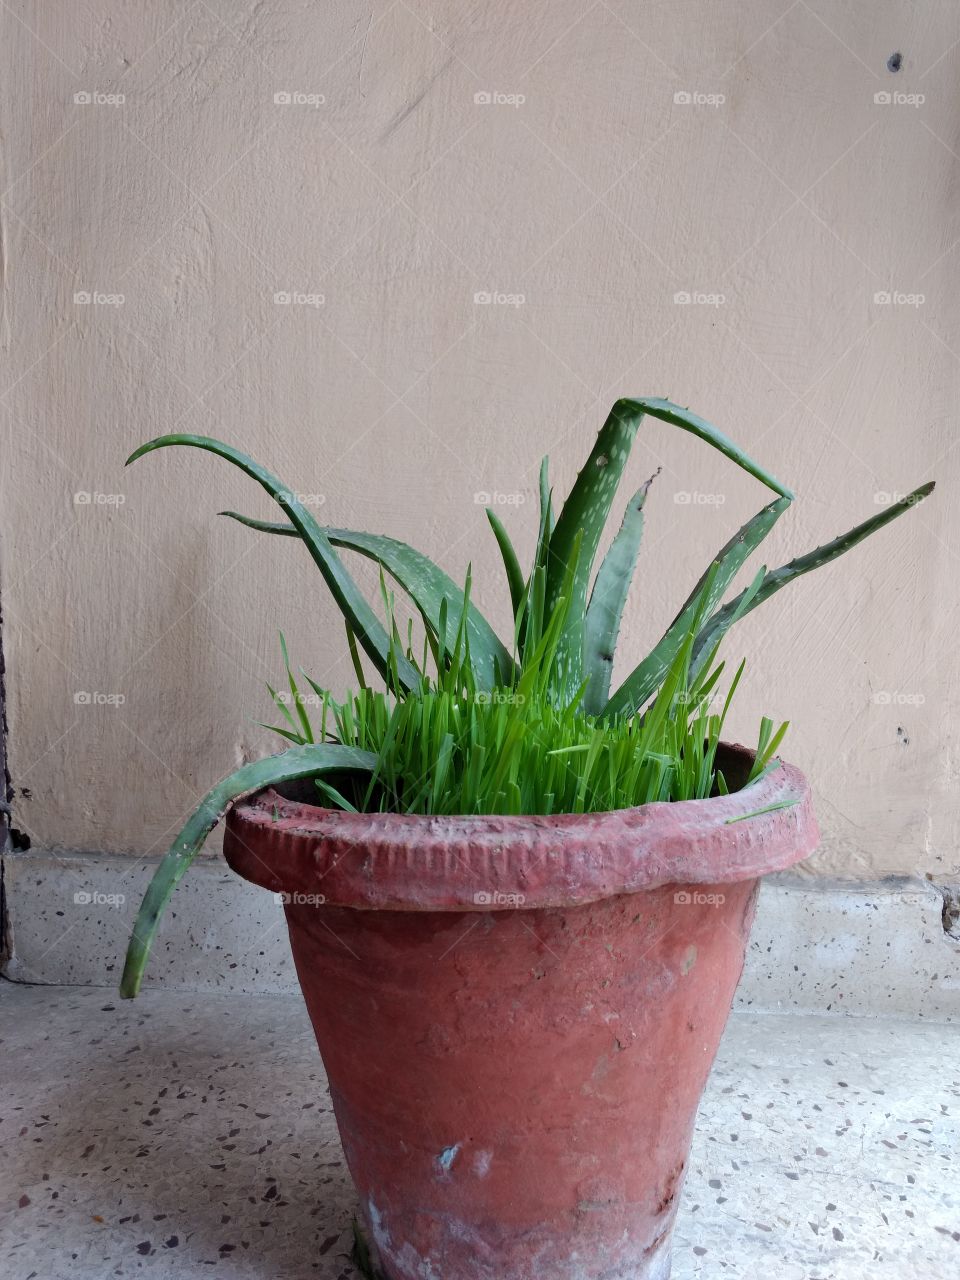 Aloe vera with wheatgrass in a pot